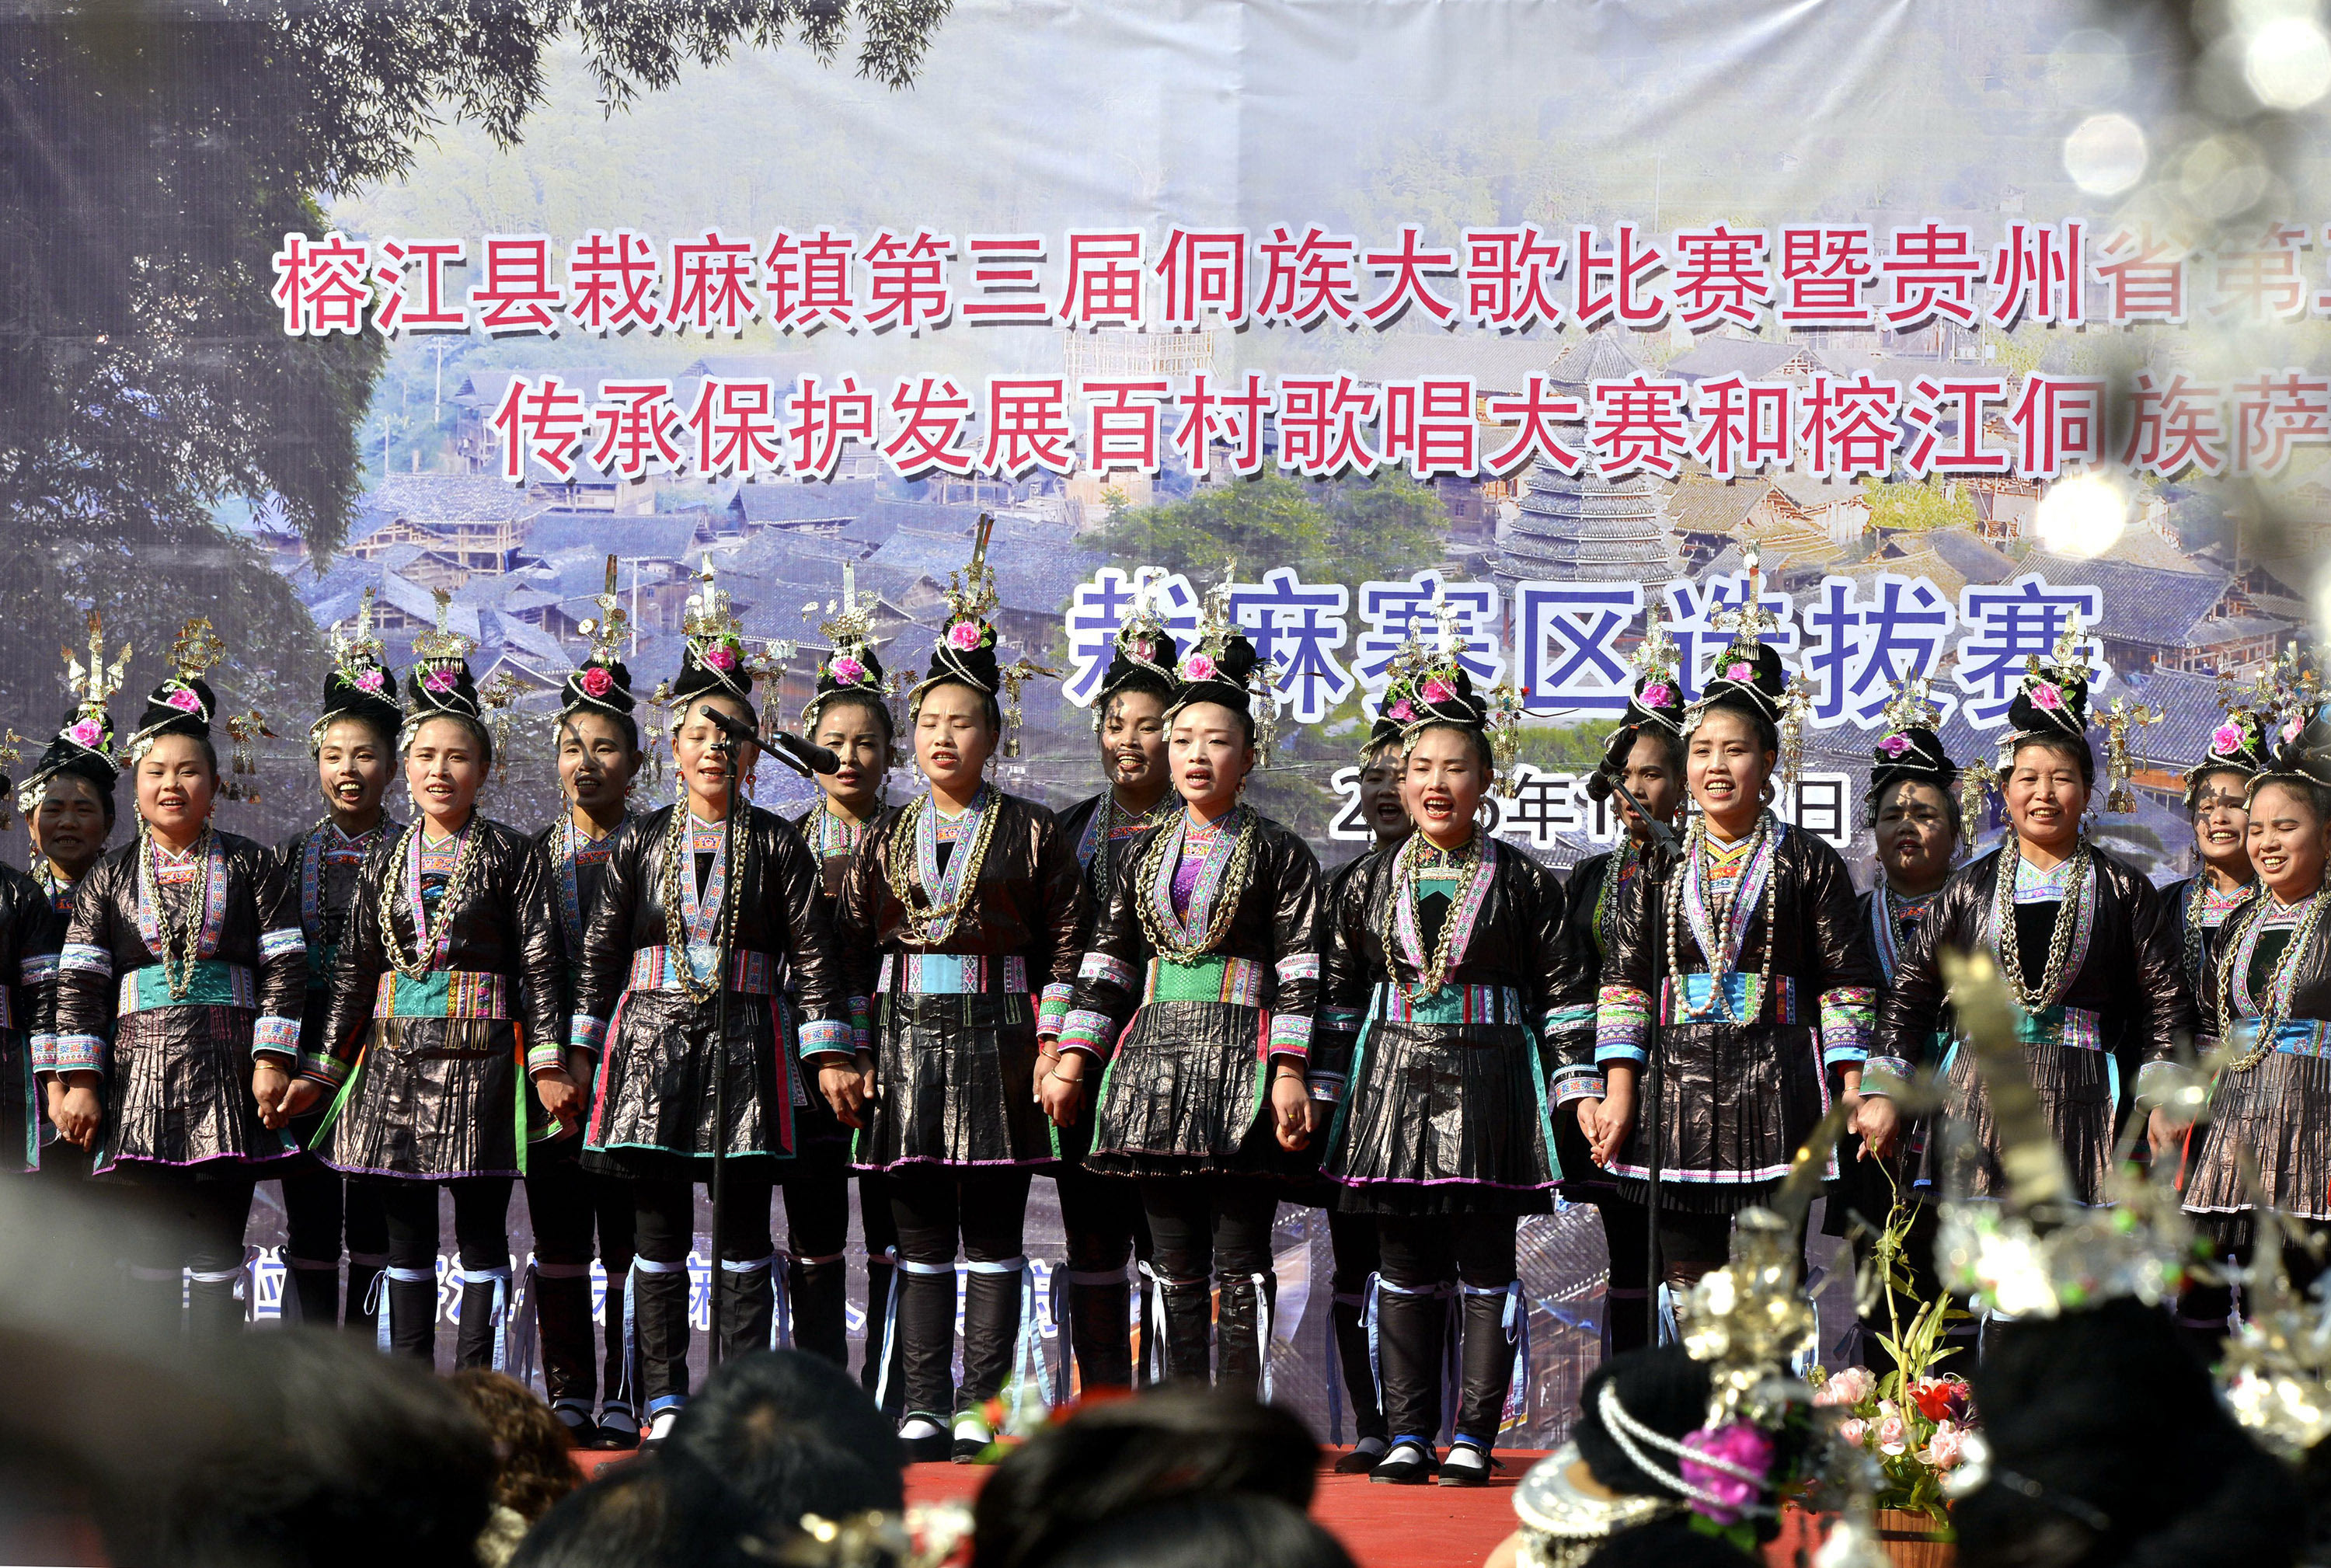 大赛栽麻赛区选拔赛,在素有榕江"侗族大歌之乡"之称的贵州省榕江县栽